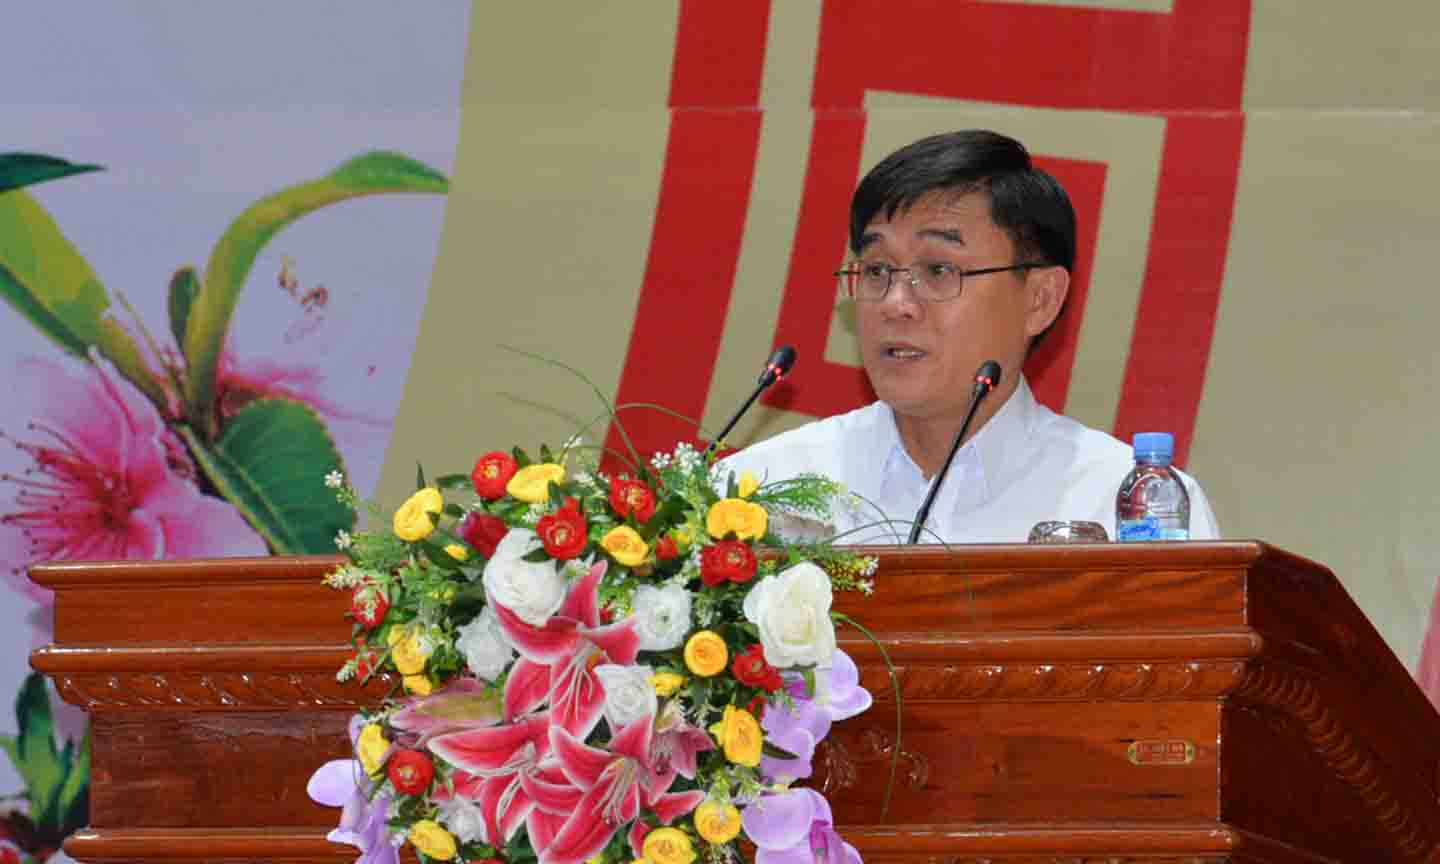 Đồng chí Nguyễn Văn Mười phát biểu tại buổi họp mặt.